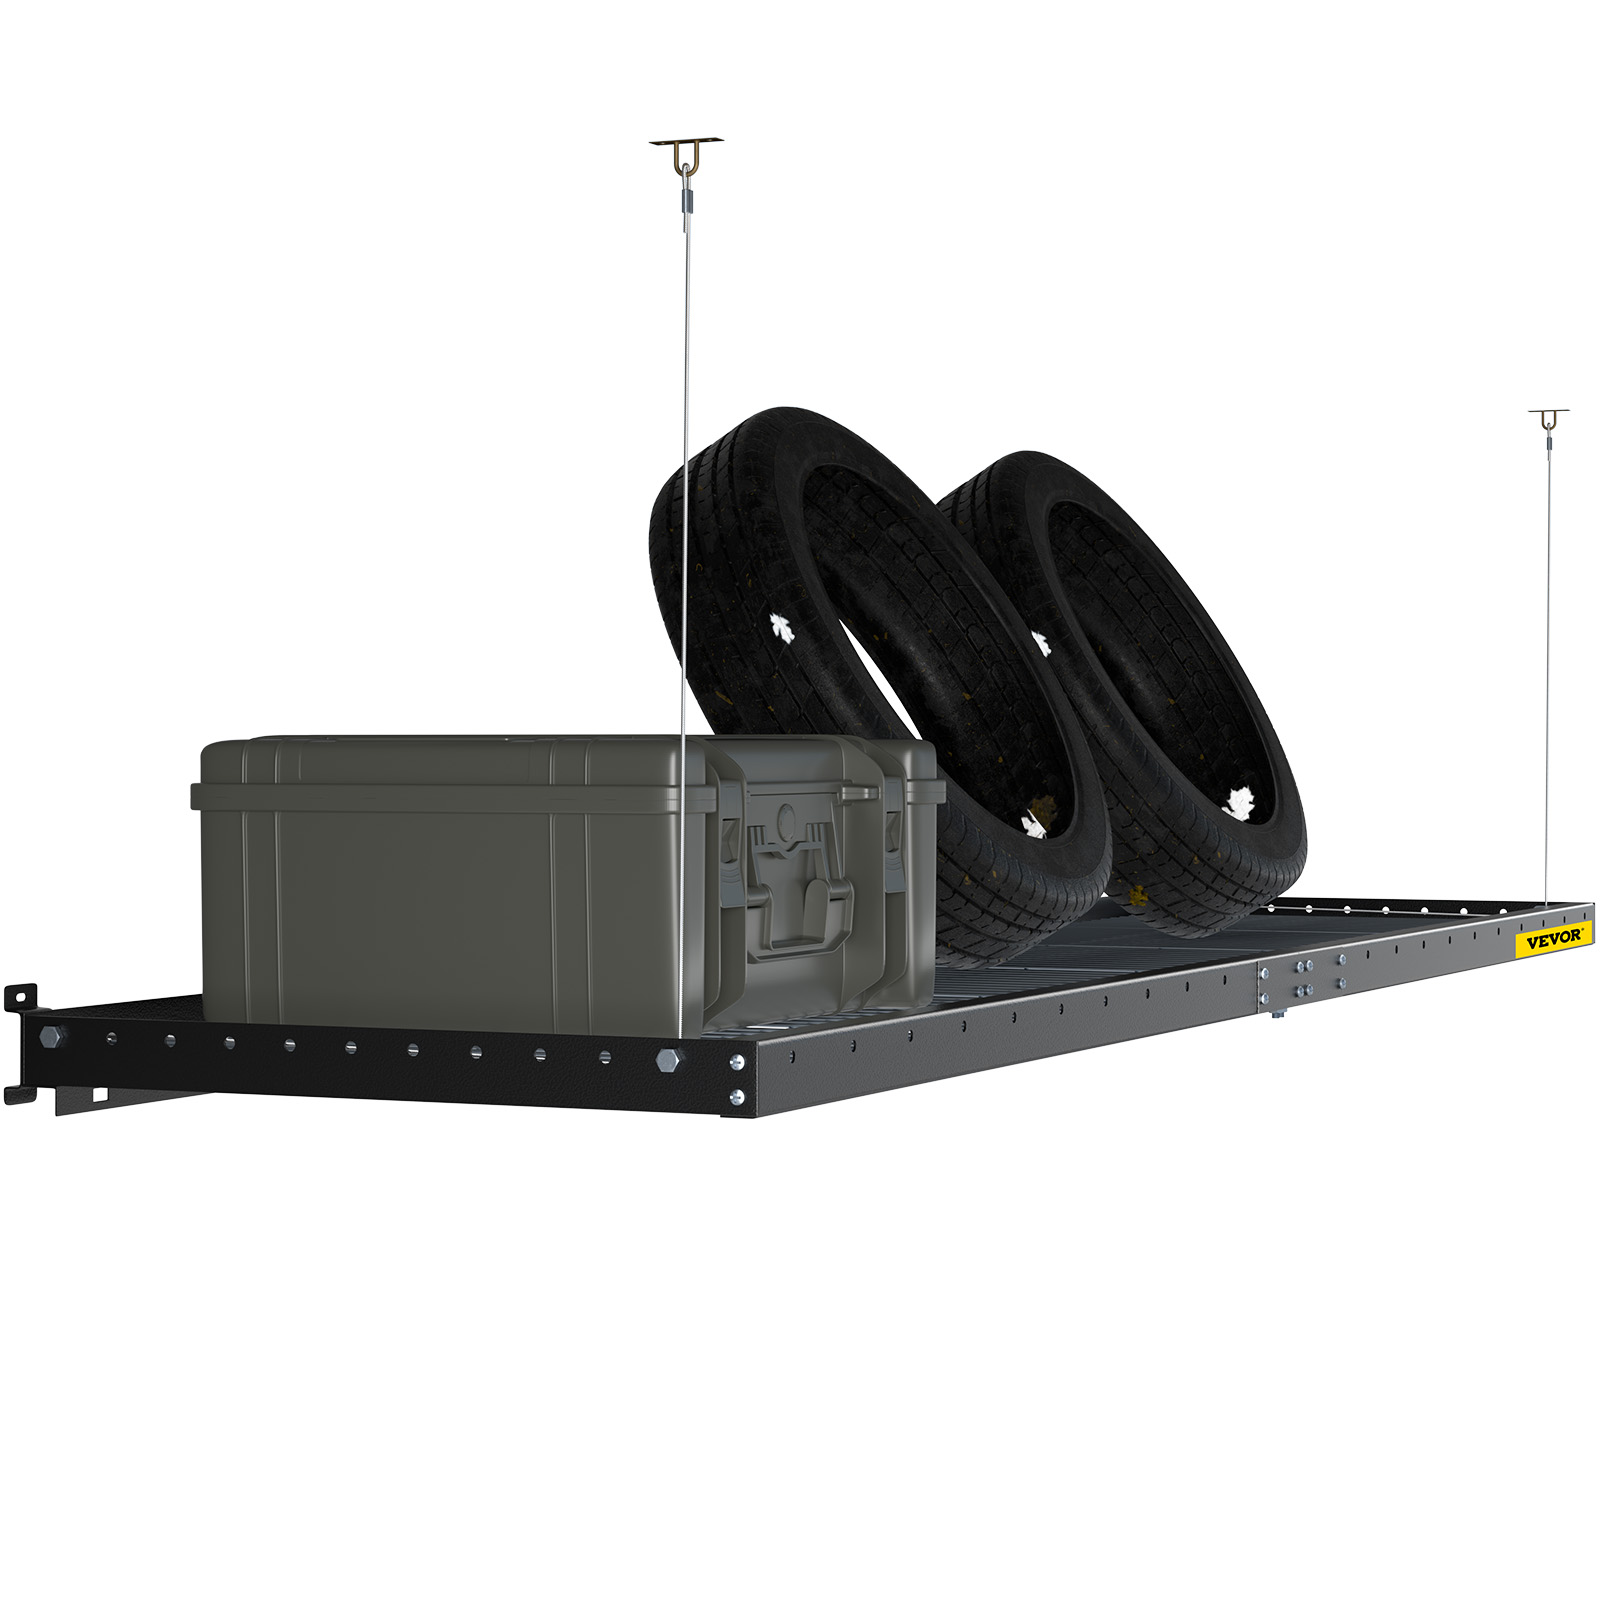 VEVOR Paquete de 2 soportes de repisa de alta resistencia, soporte flotante  de 9 x 12 x 4 pulgadas, 450 libras de carga de garaje, taller, hogar